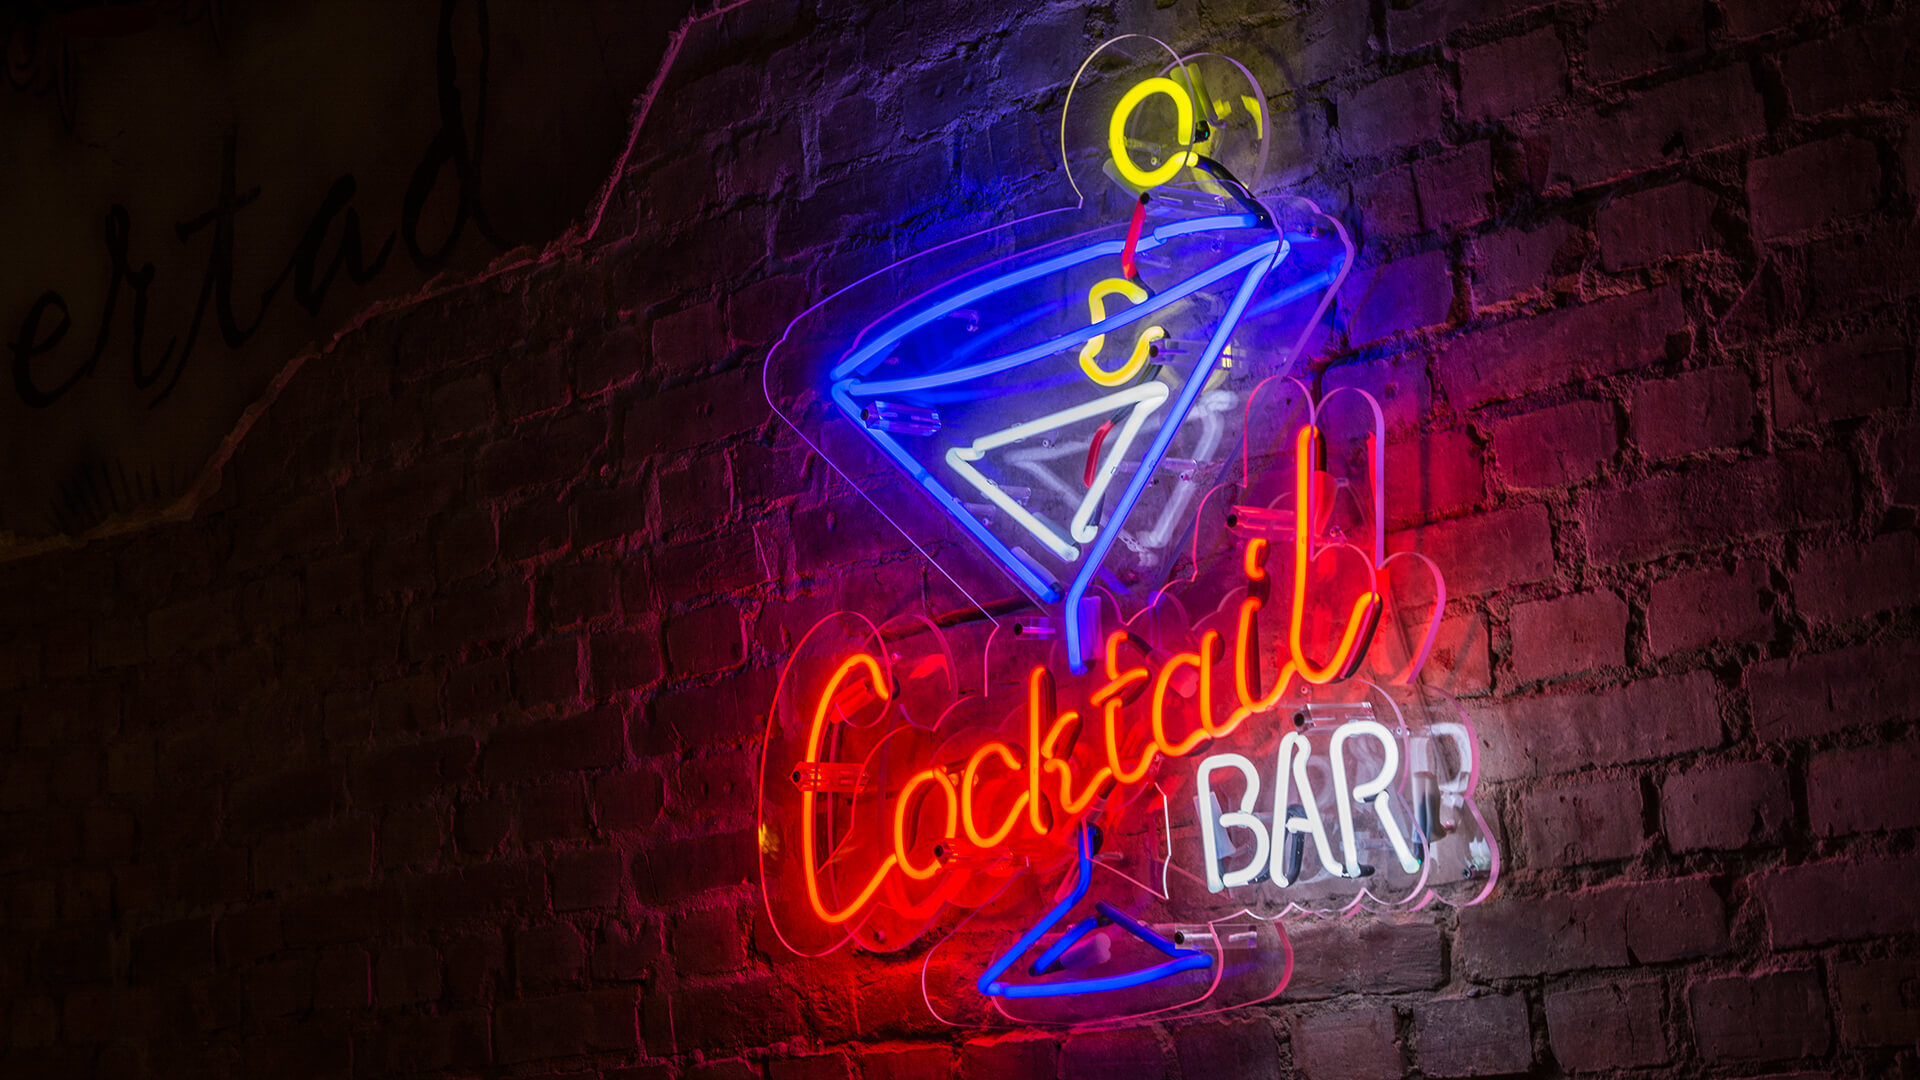 cuba libre Kuba glass cocktailbar cocktail bar - cuba-libre-color-neón-en-la-pared-con-ladrillo-en-restaurante-bar-neón-color-en-la-pared-sobre-las-mesas-neón-orden-luz-vidrio-poznan